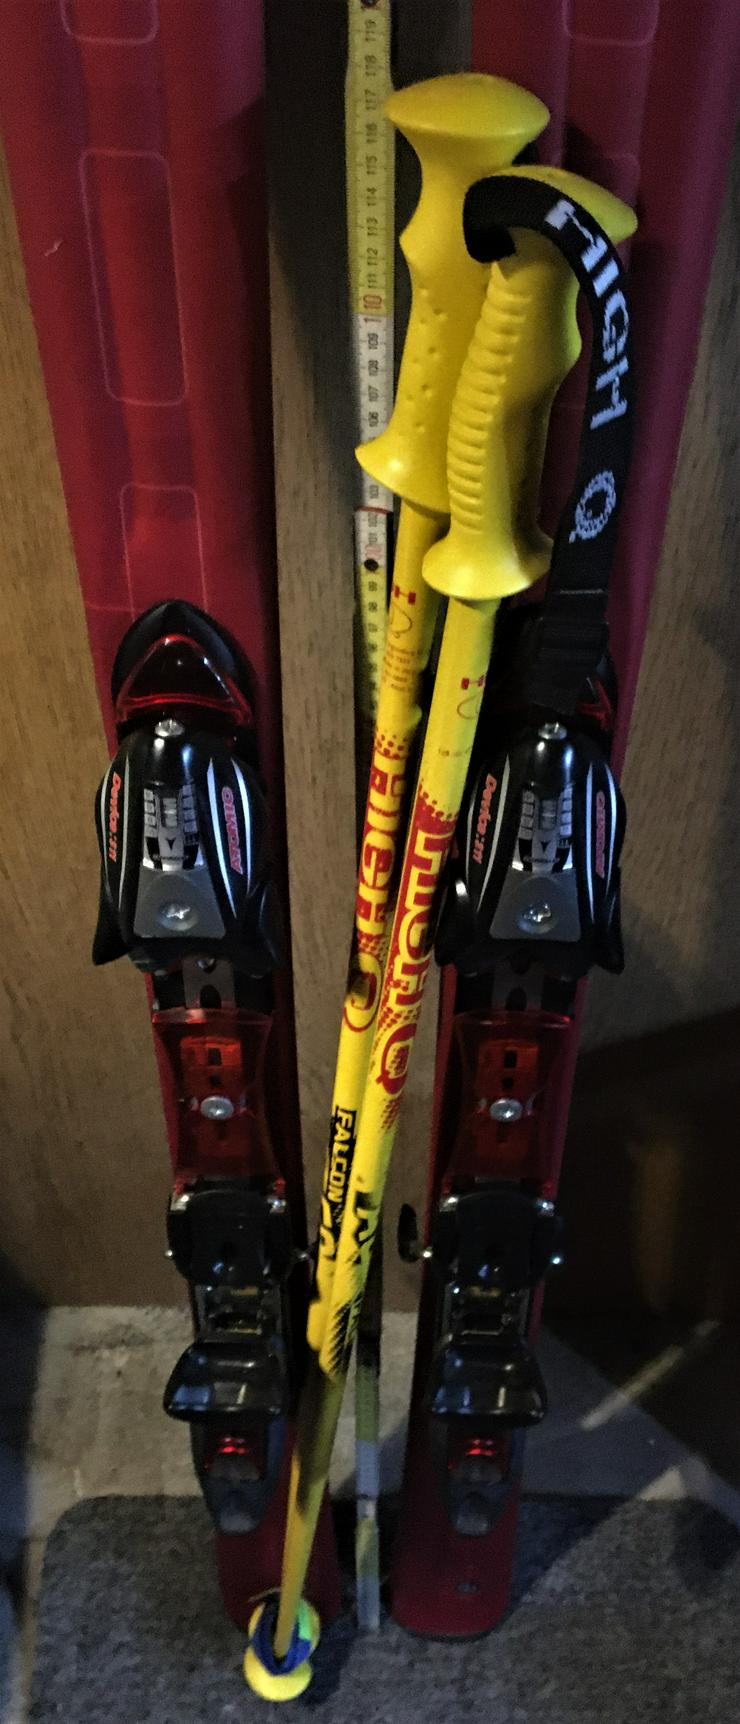 Bild 6: Skiausrüstung komplett mit Ski, Stöcken, Schuhen u. Transportsack